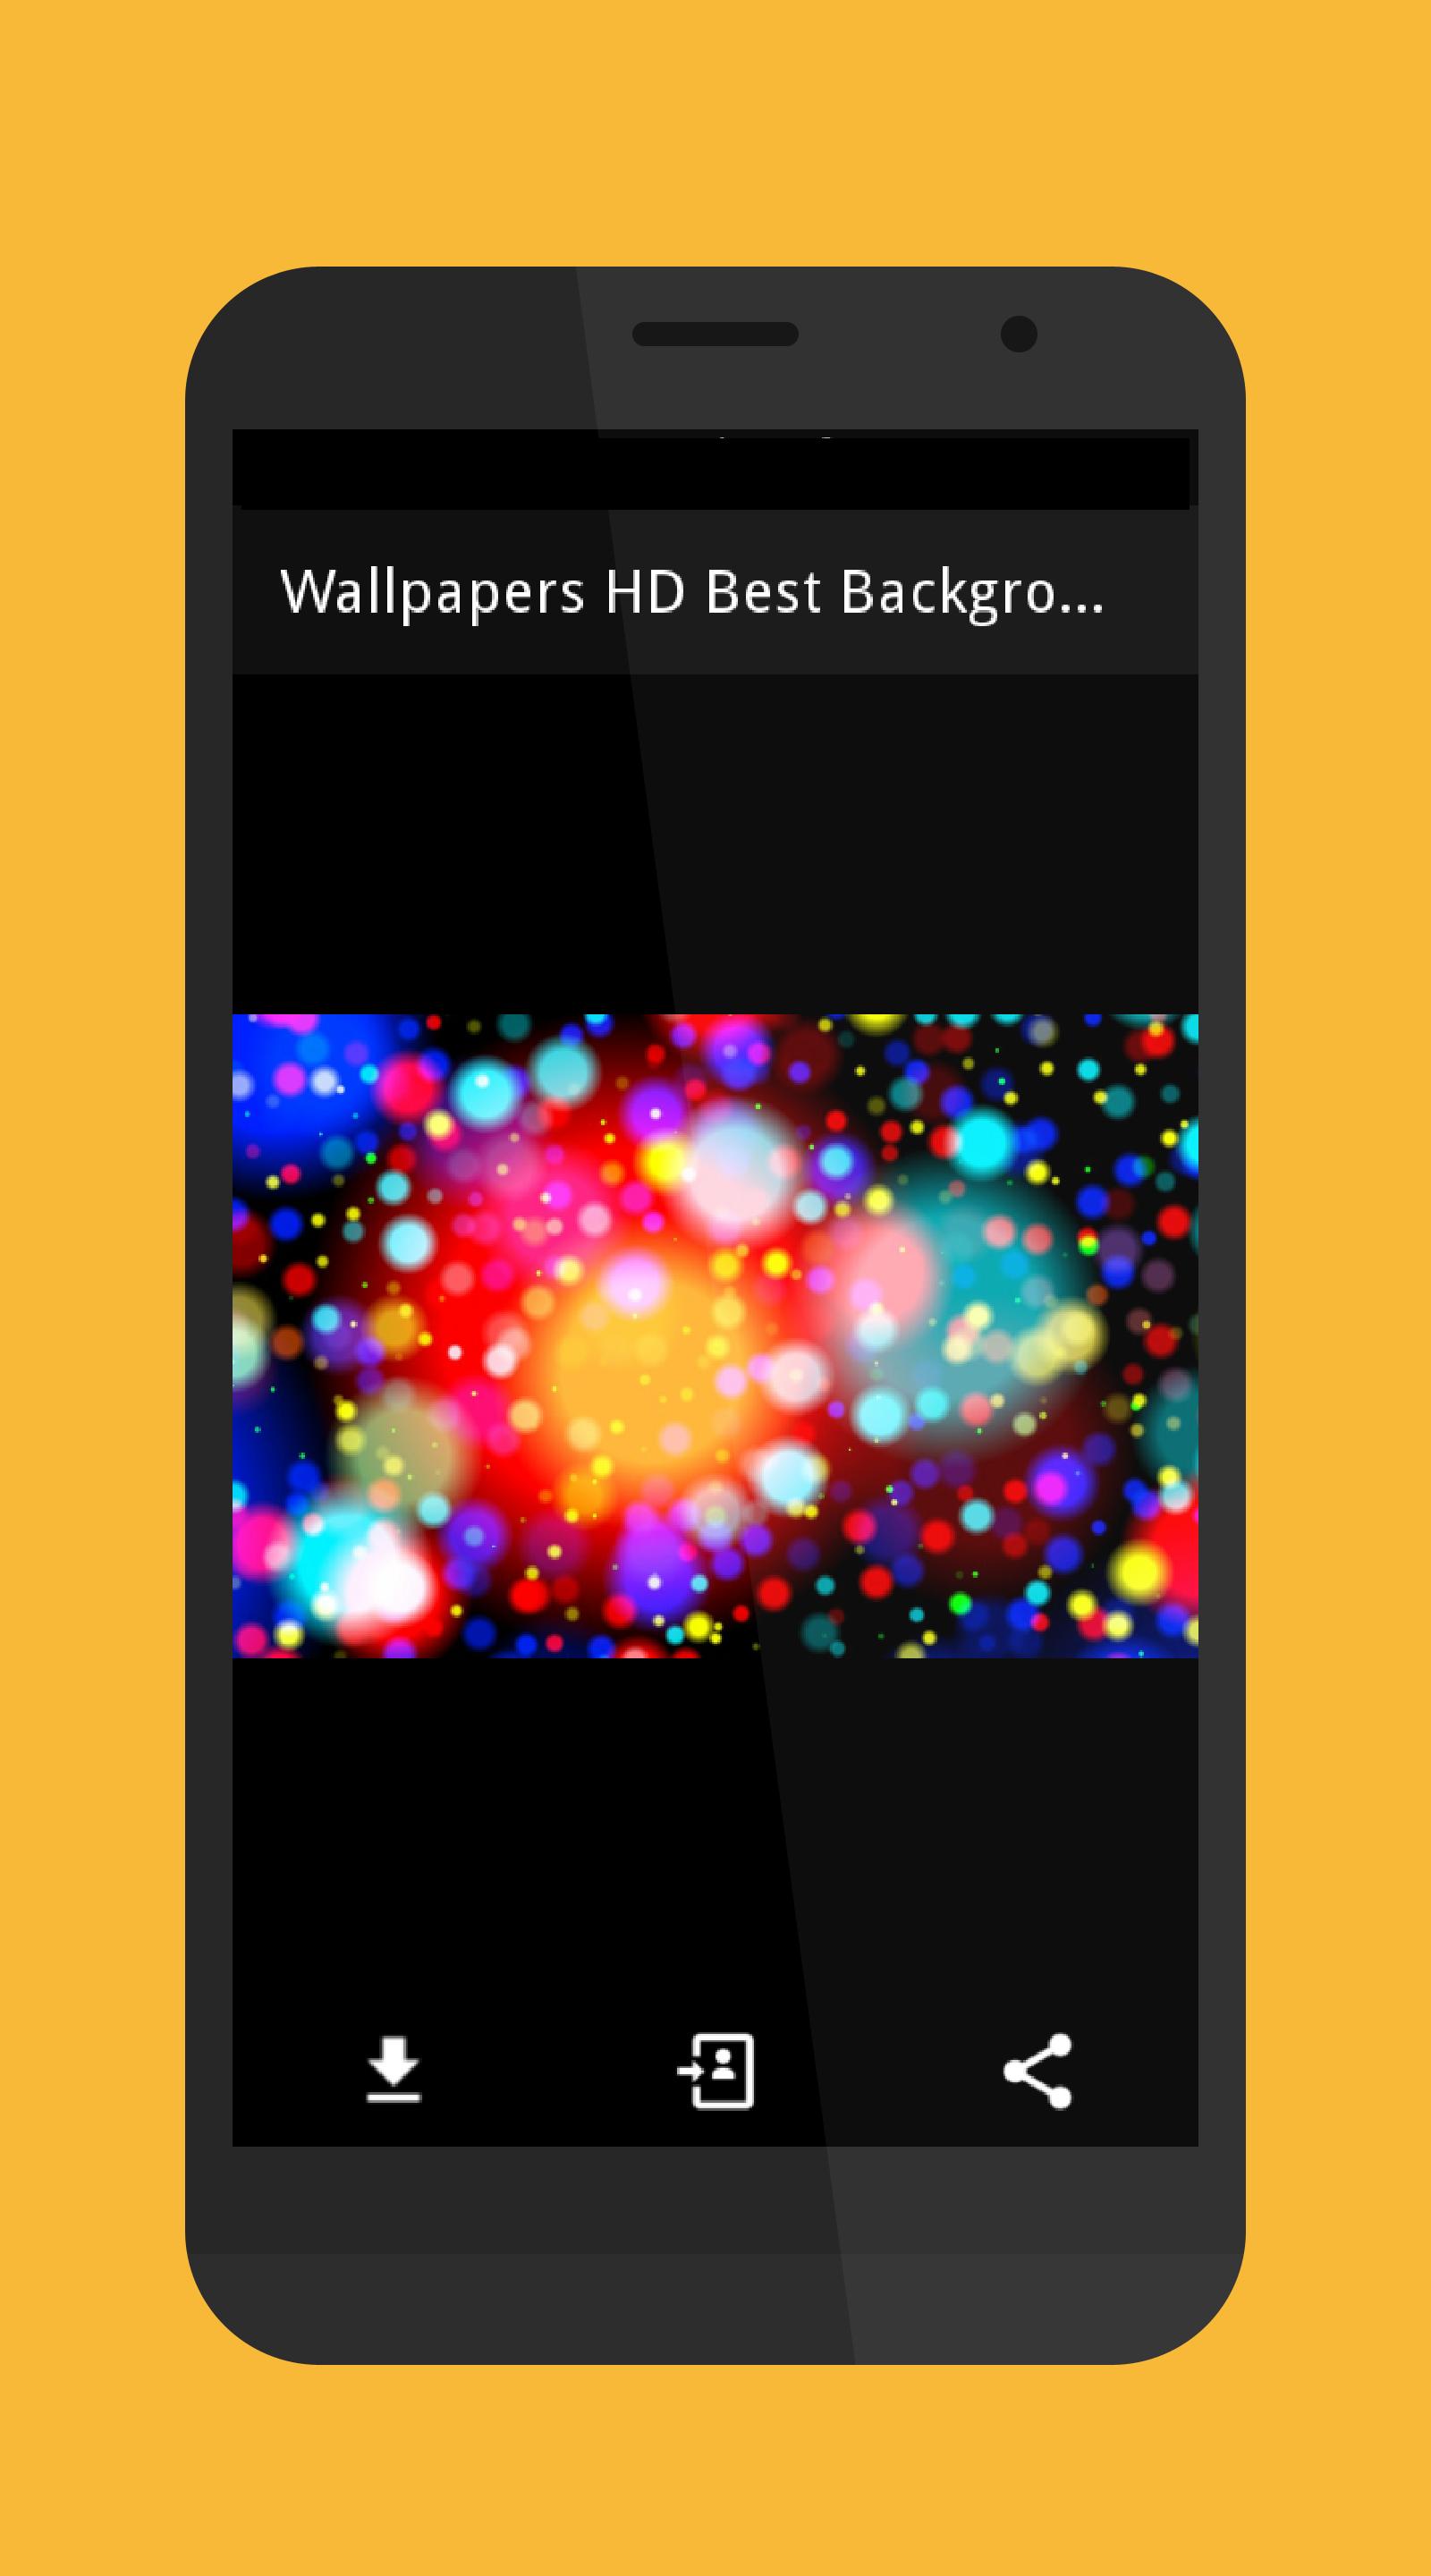 Android 用の 壁紙 Hd ベスト 背景 無料 オフライン Apk をダウンロード